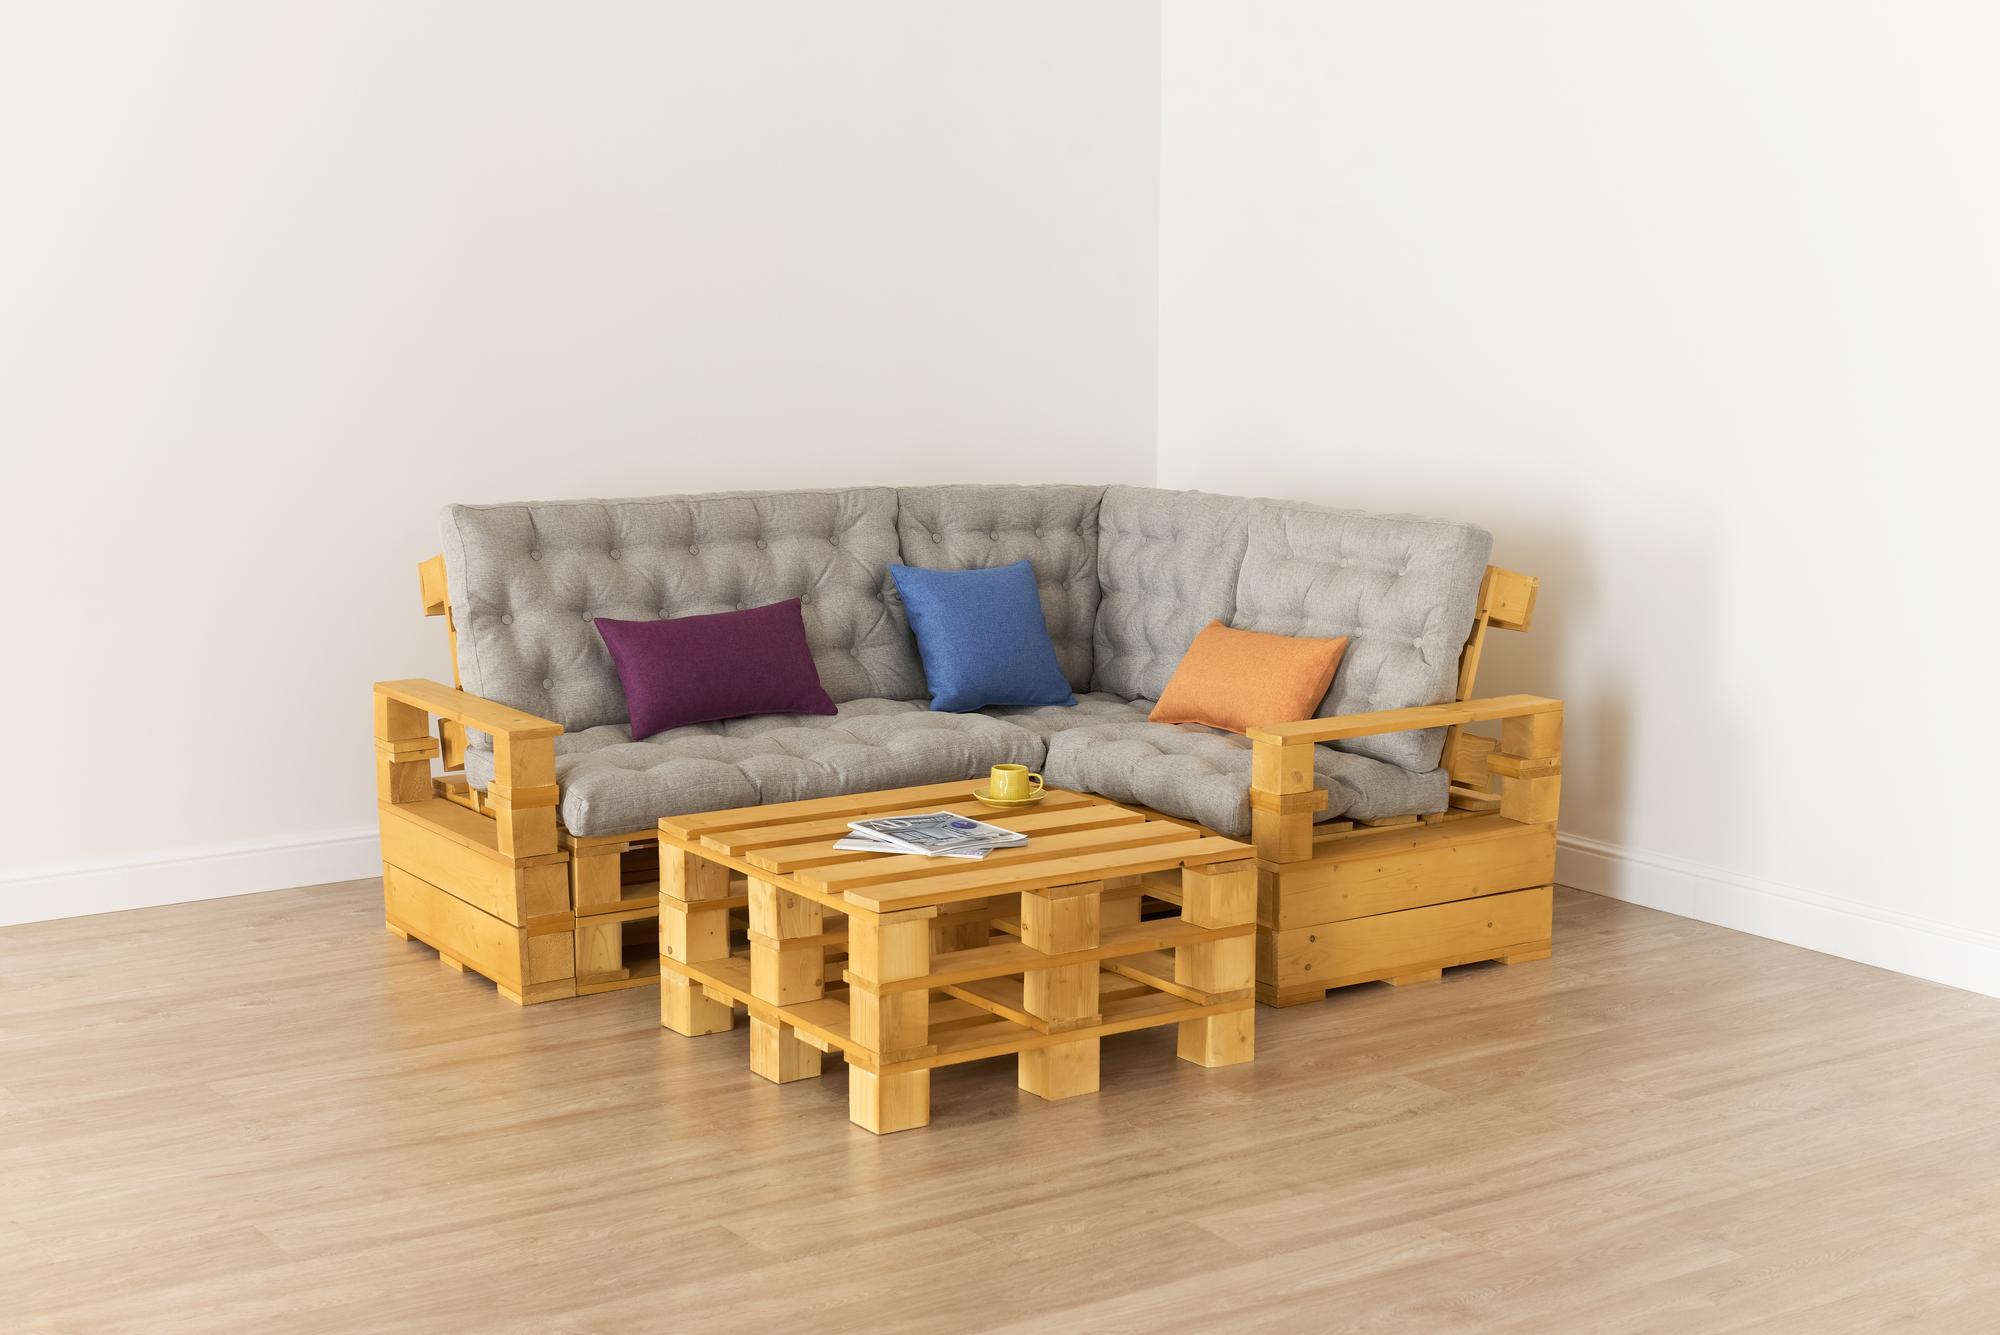 Купить Подлокотник + Диван 70 + угловой диван + диван 110 + подлокотник + стол от производителя “Архитектория” 